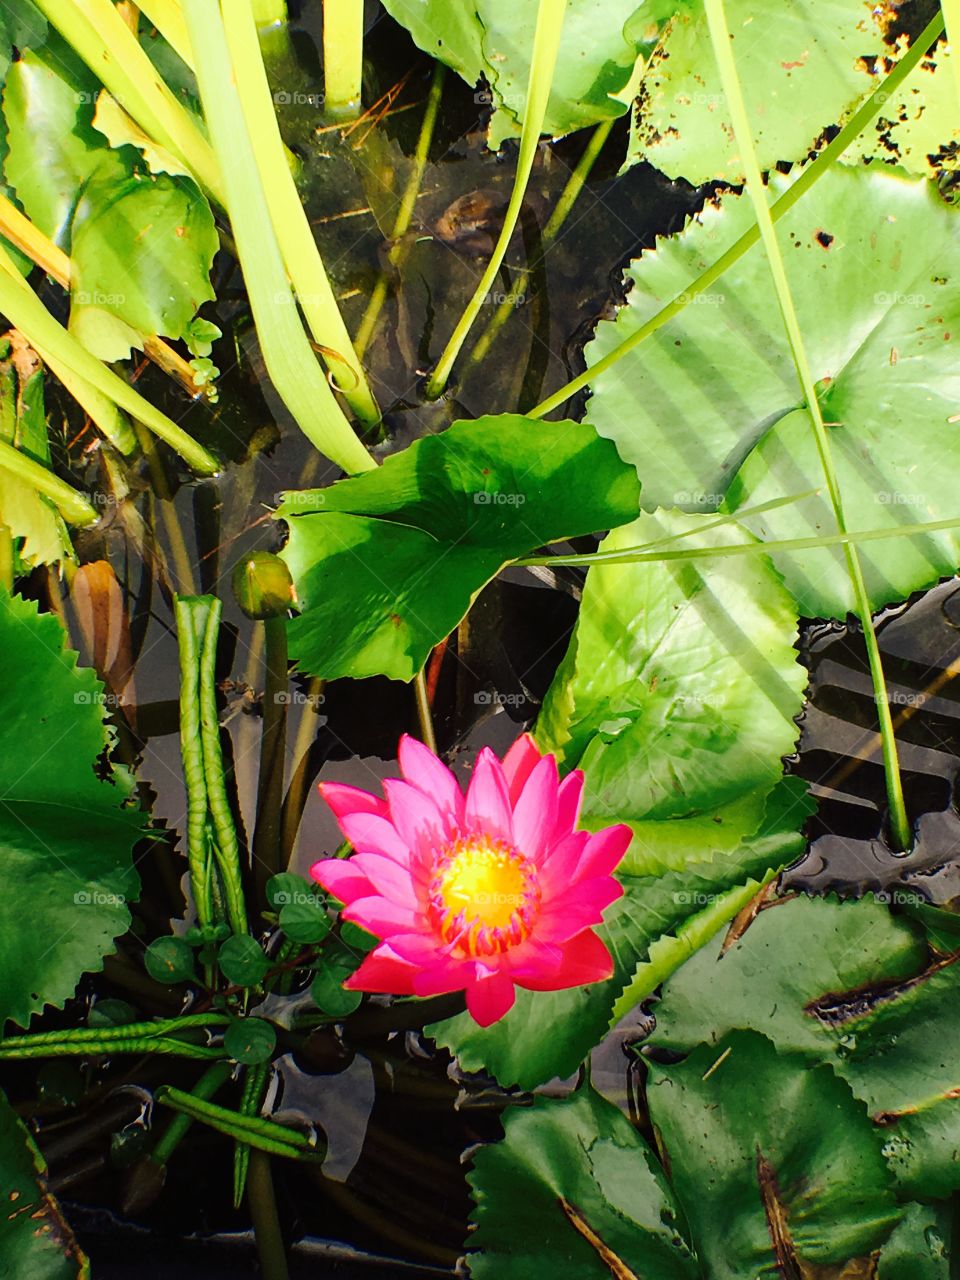 Lotus flower, green